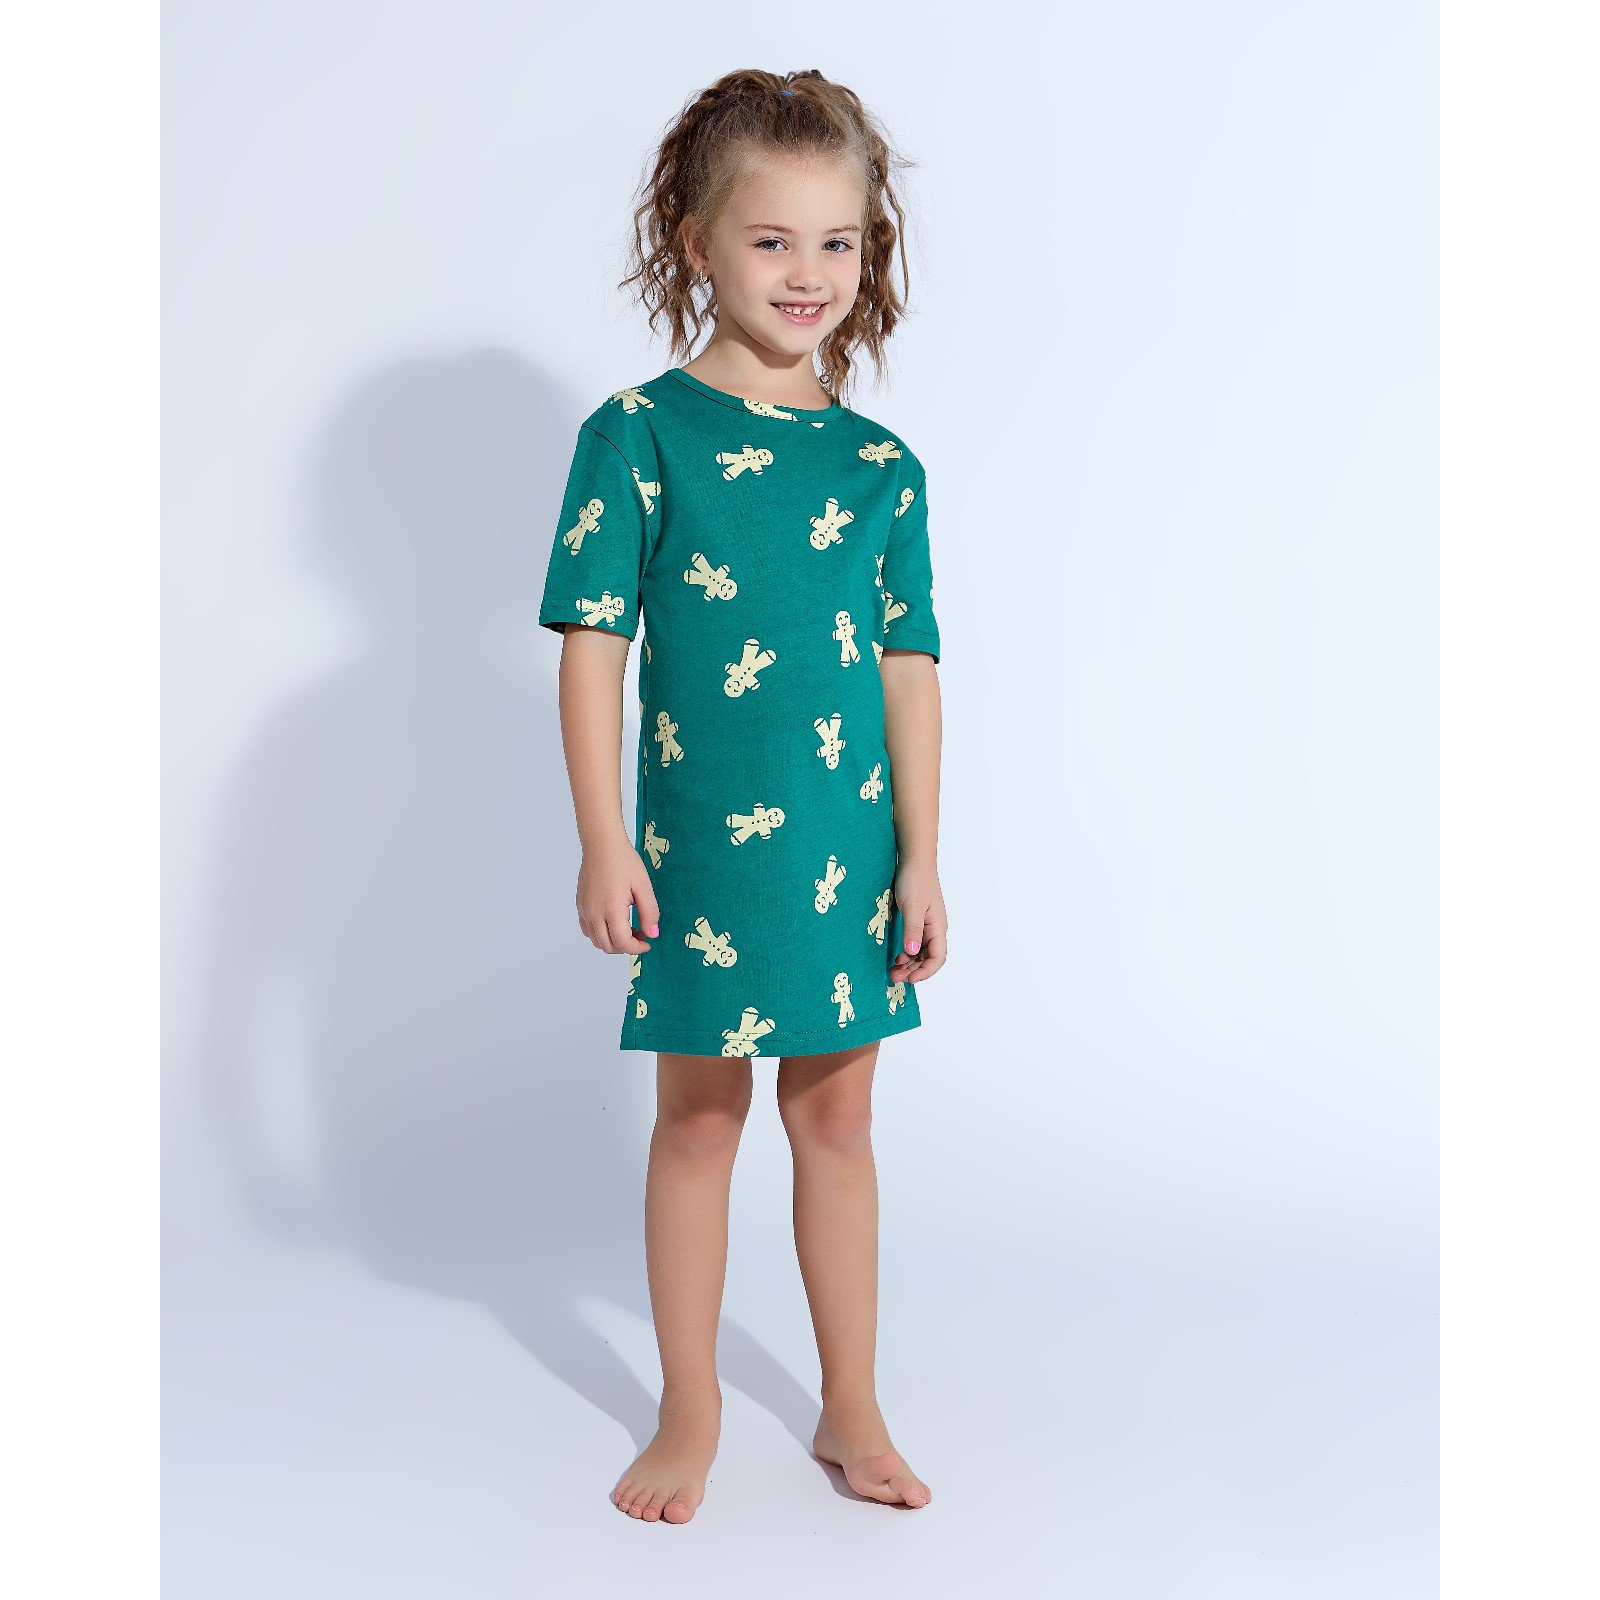 Детская ночная сорочка Печеньки Цвет: Зелёный (10 лет), размер 10 лет mak600426 Детская ночная сорочка Печеньки Цвет: Зелёный (10 лет) - фото 1